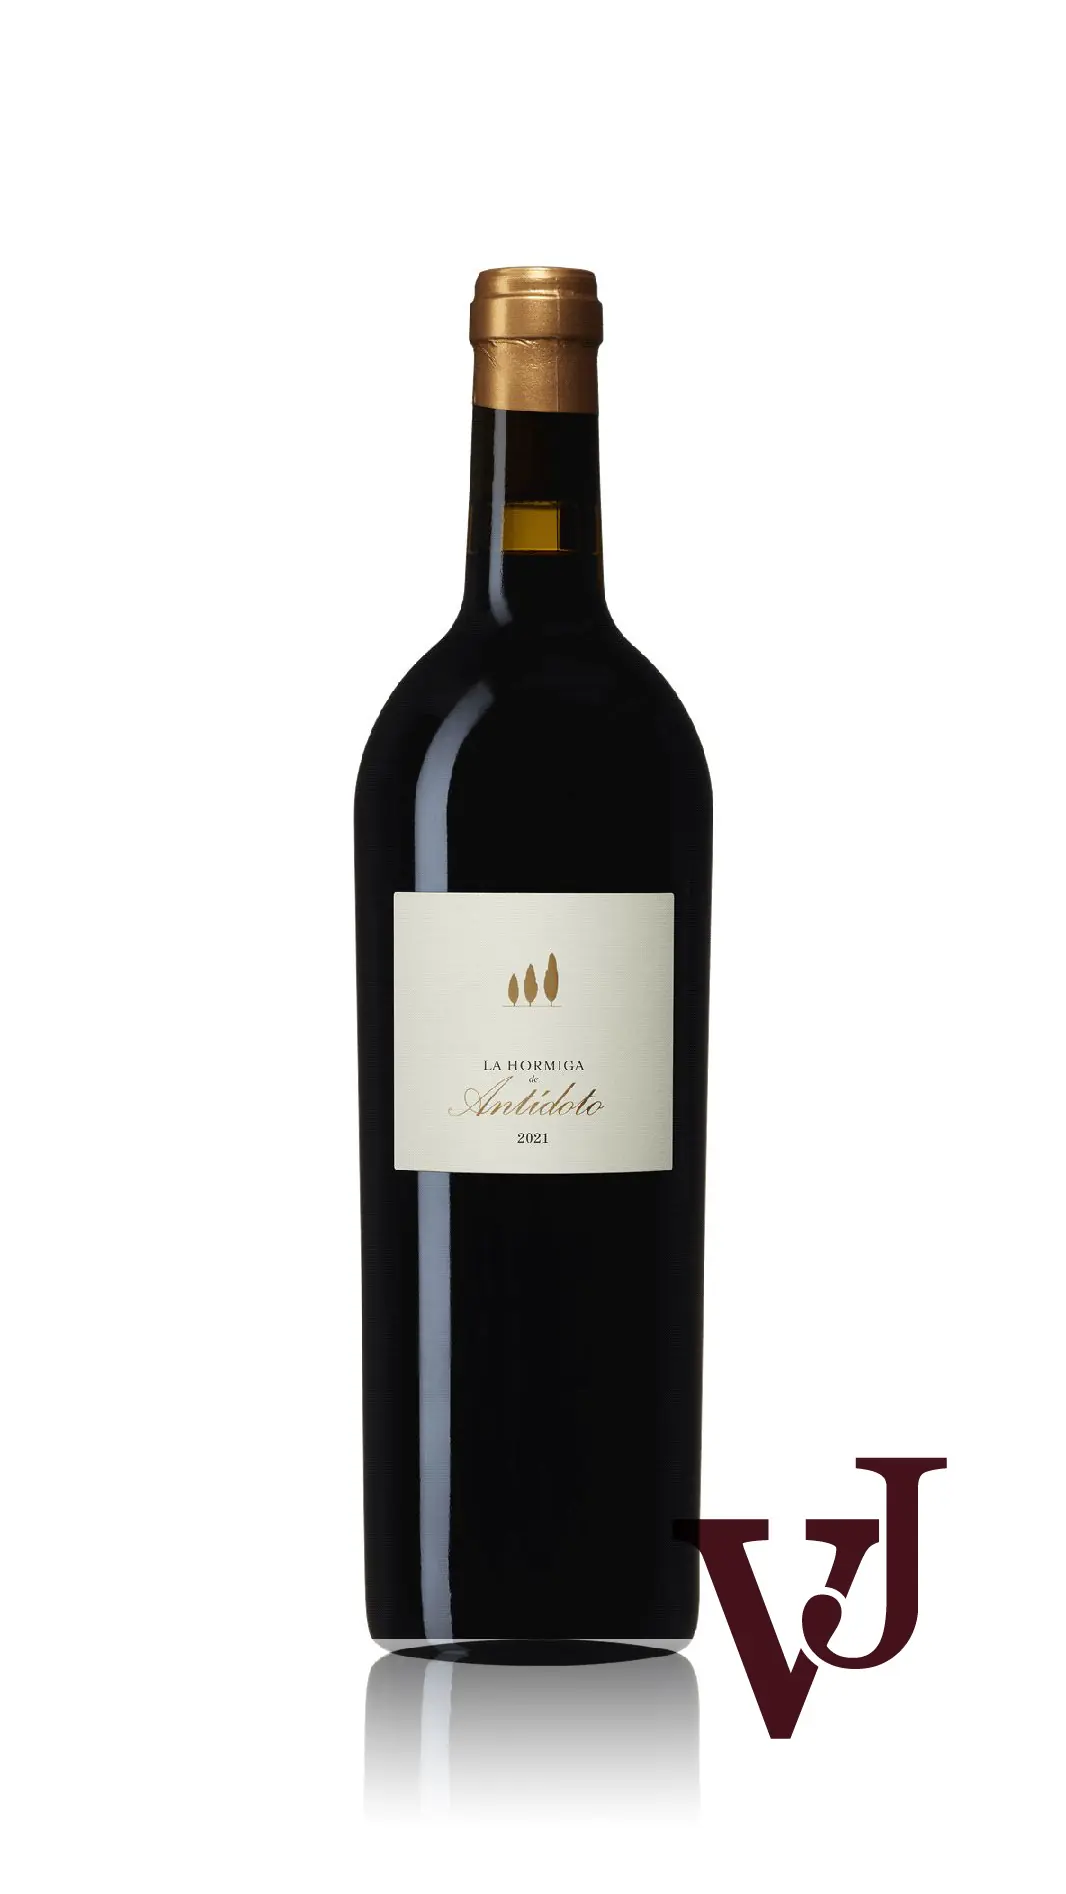 Rött Vin - La Hormiga de Antídoto artikel nummer 5437901 från producenten Bodegas Antidoto från Spanien - Vinjournalen.se